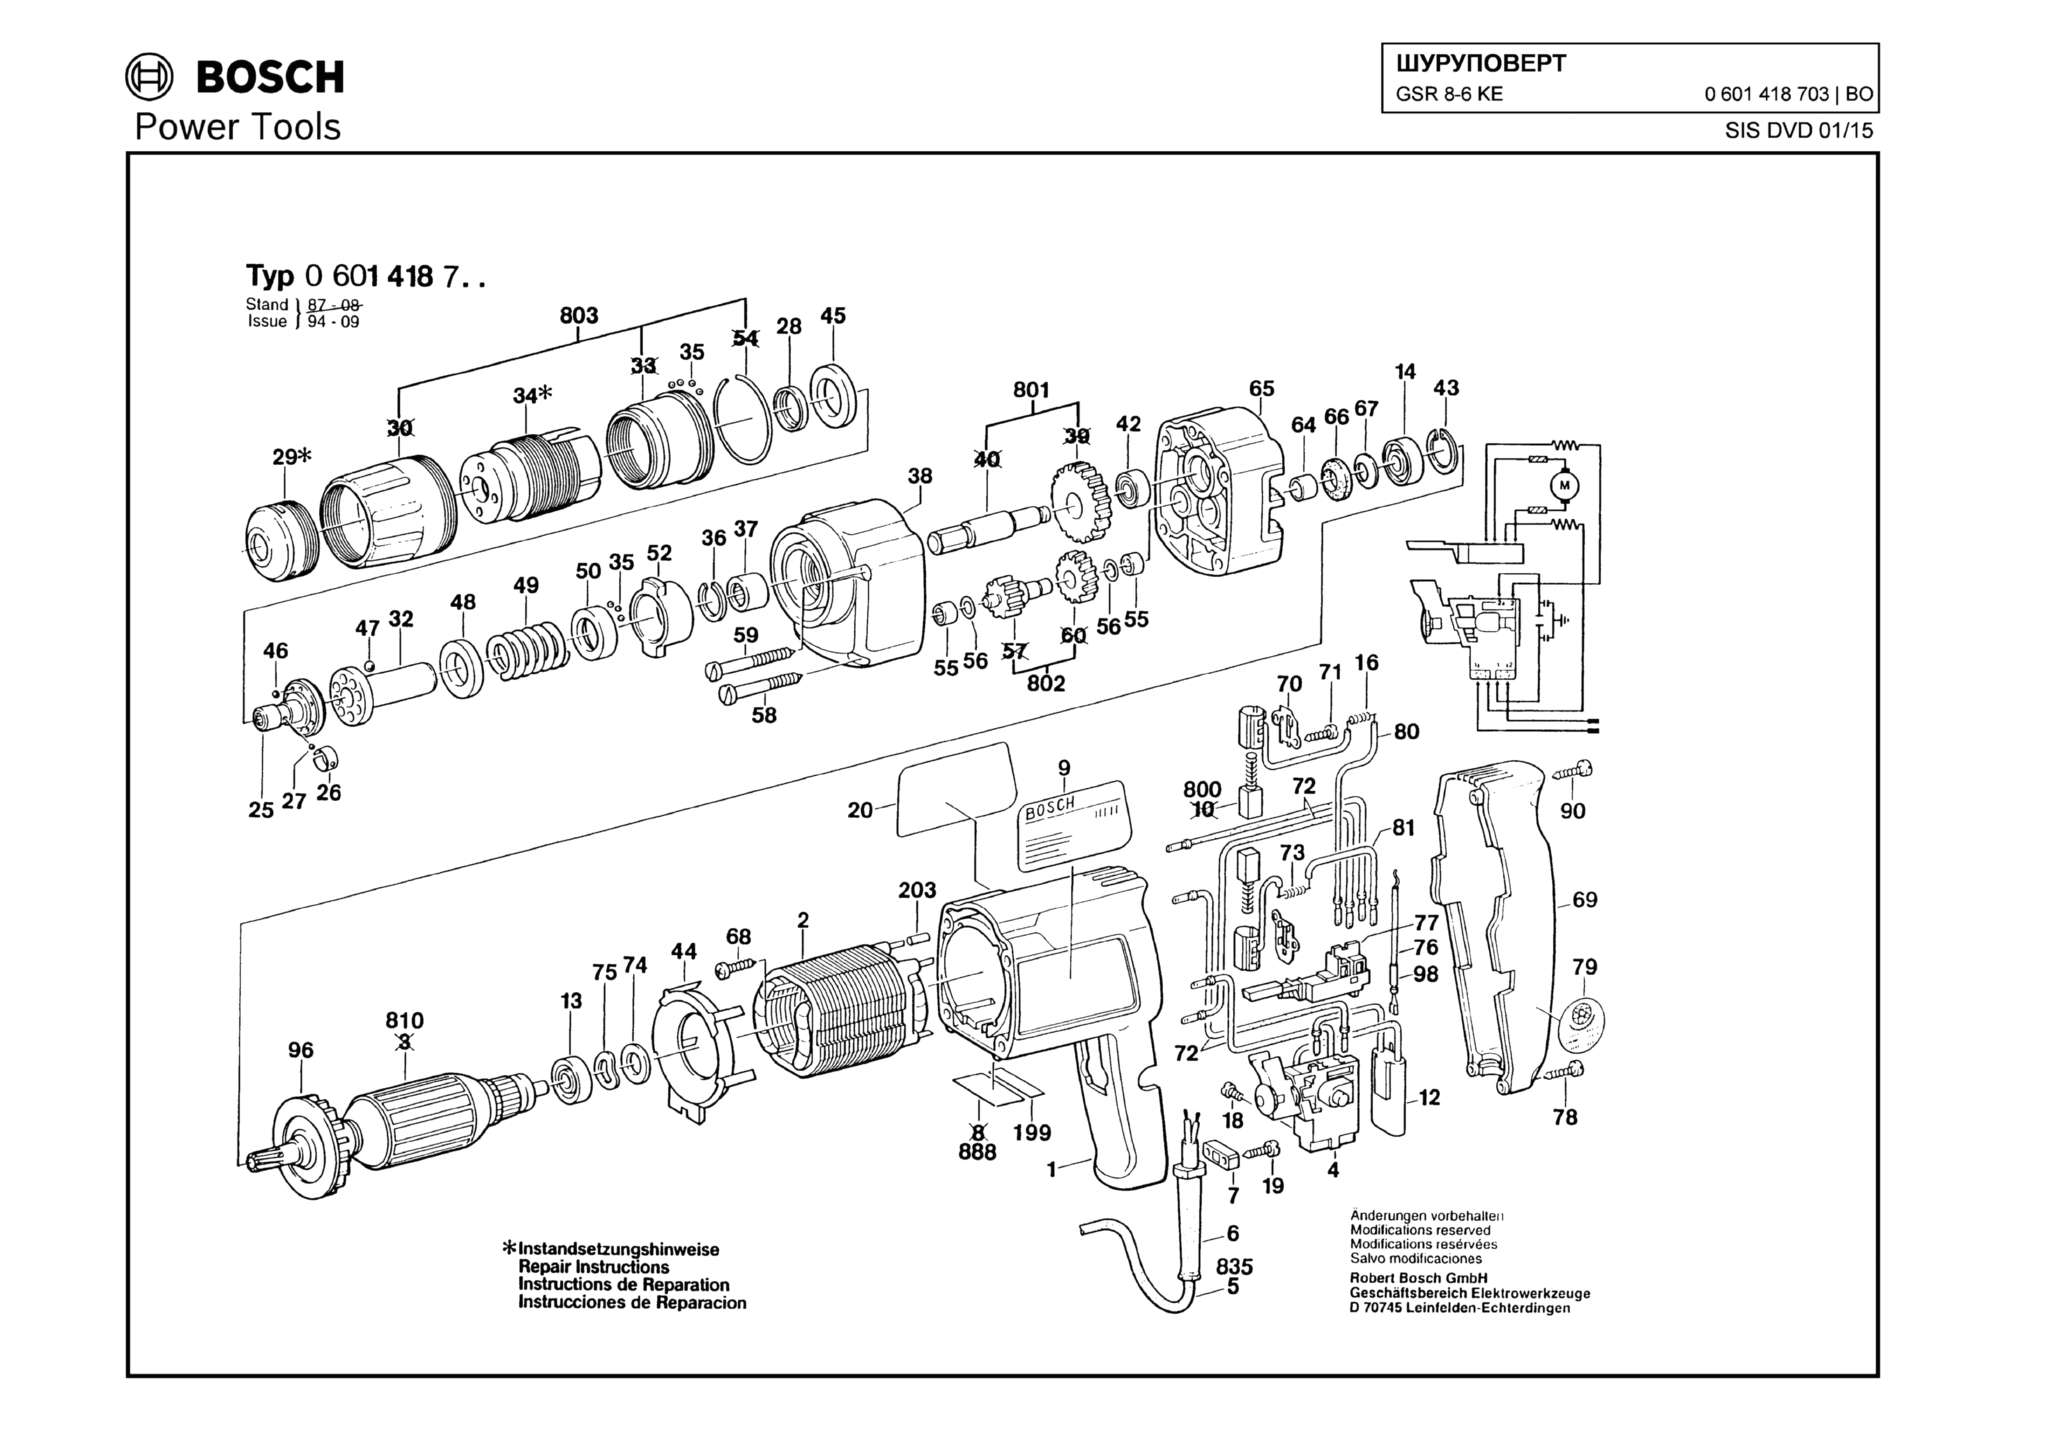 Запчасти, схема и деталировка Bosch GSR 8-6 KE (ТИП 0601418703)